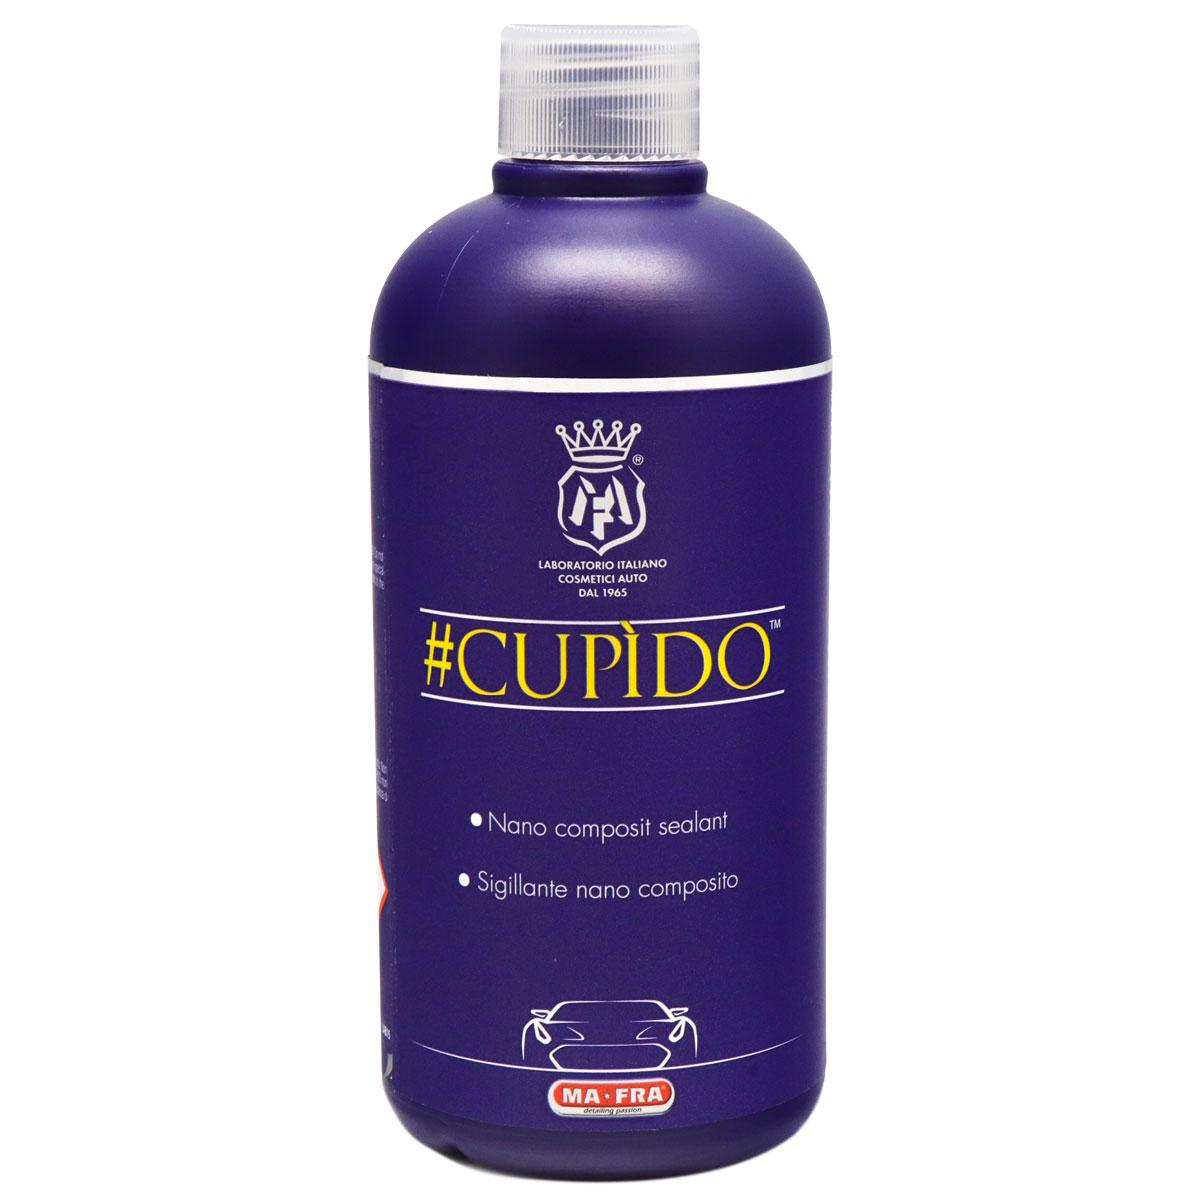 Жидкое стекло #CUPÌDO (нанокомпозитная защита для нанокерамики)